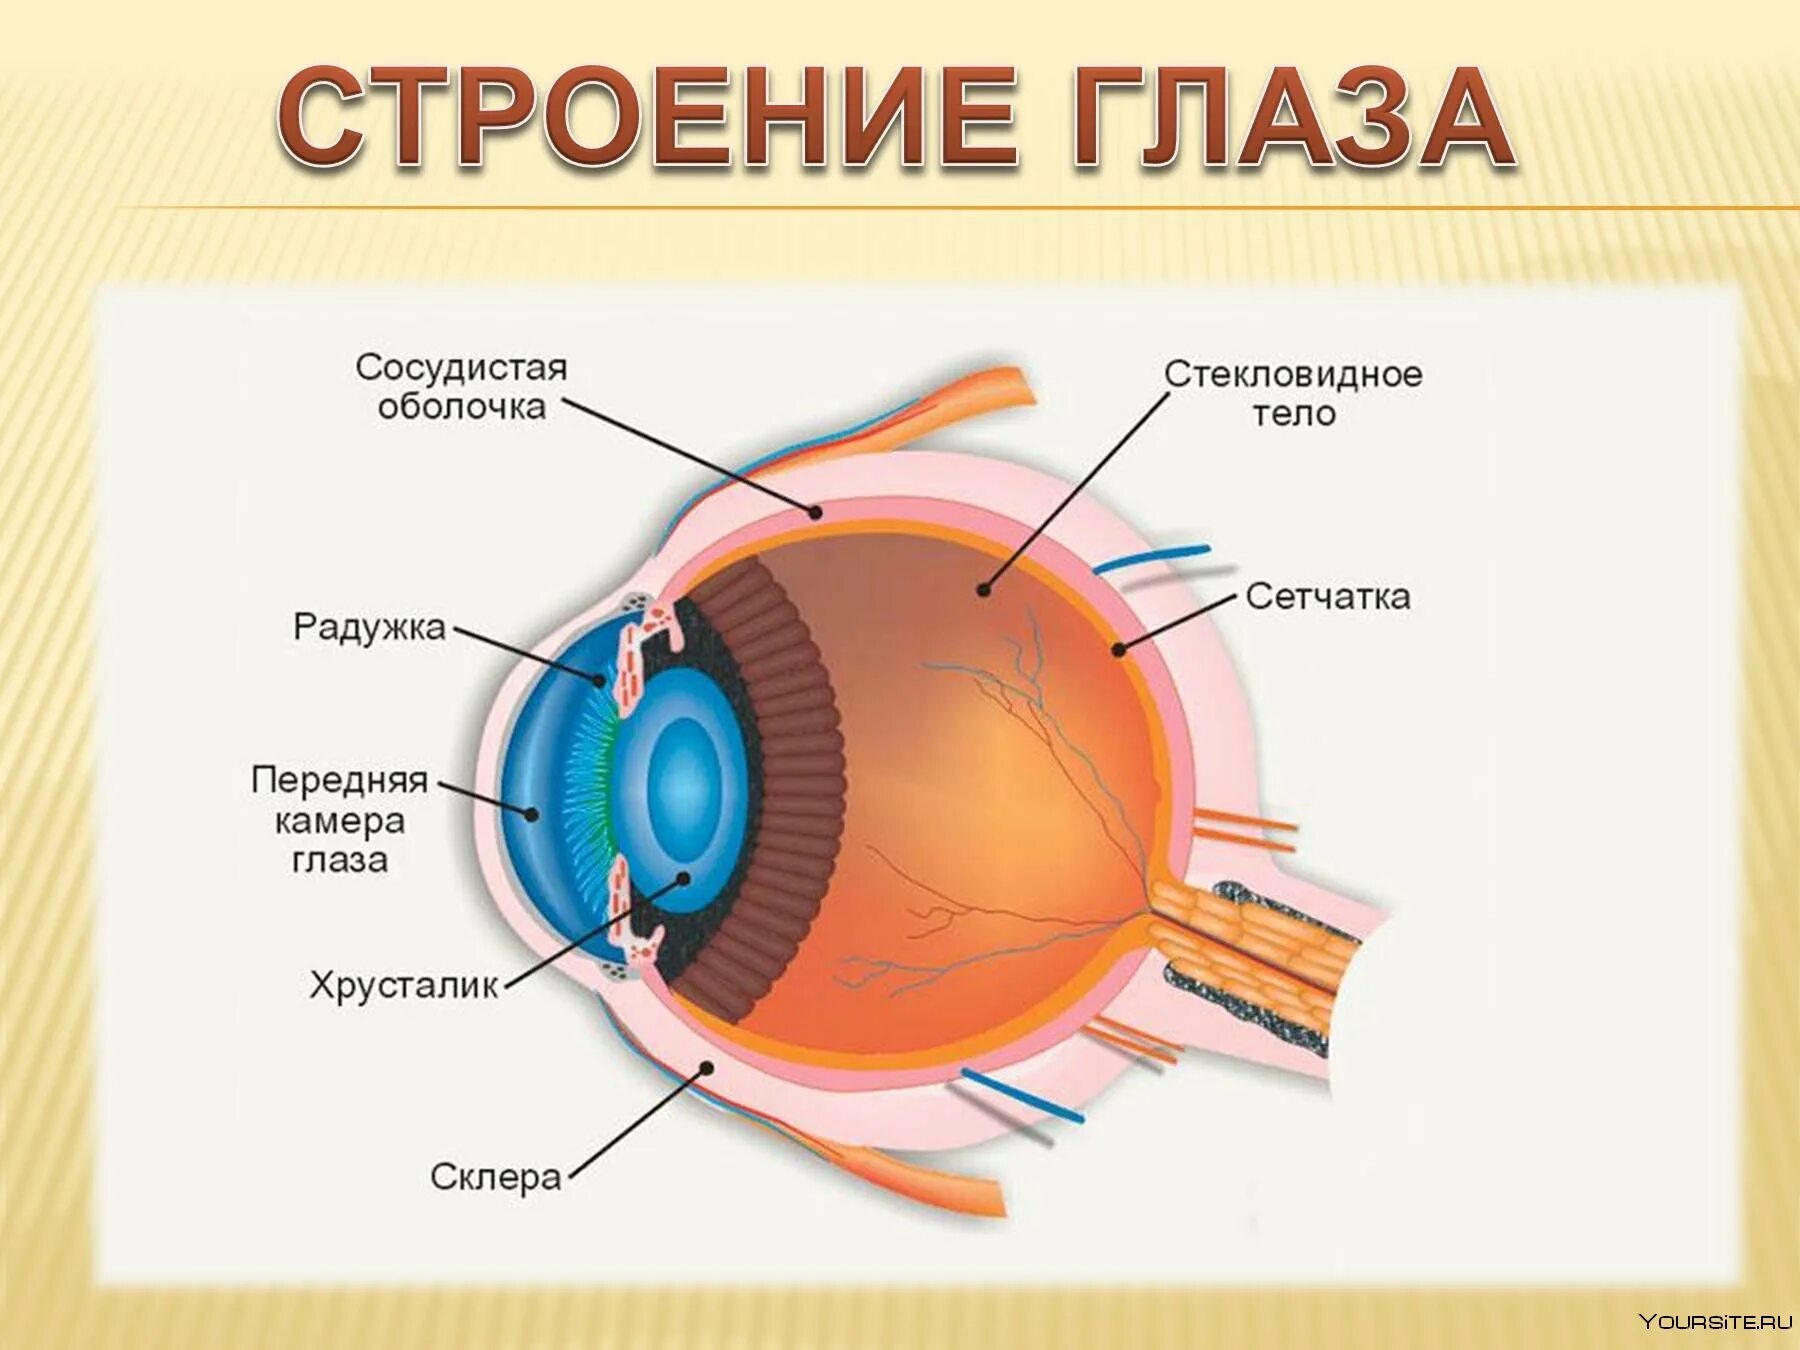 Глаза являются органом человека. Функции периферического отдела зрительного анализатора. Строение периферического отдела зрительного анализатора глаза. Глазной анализатор строение и функции. Строение органа зрения (строение глазного яблока)..